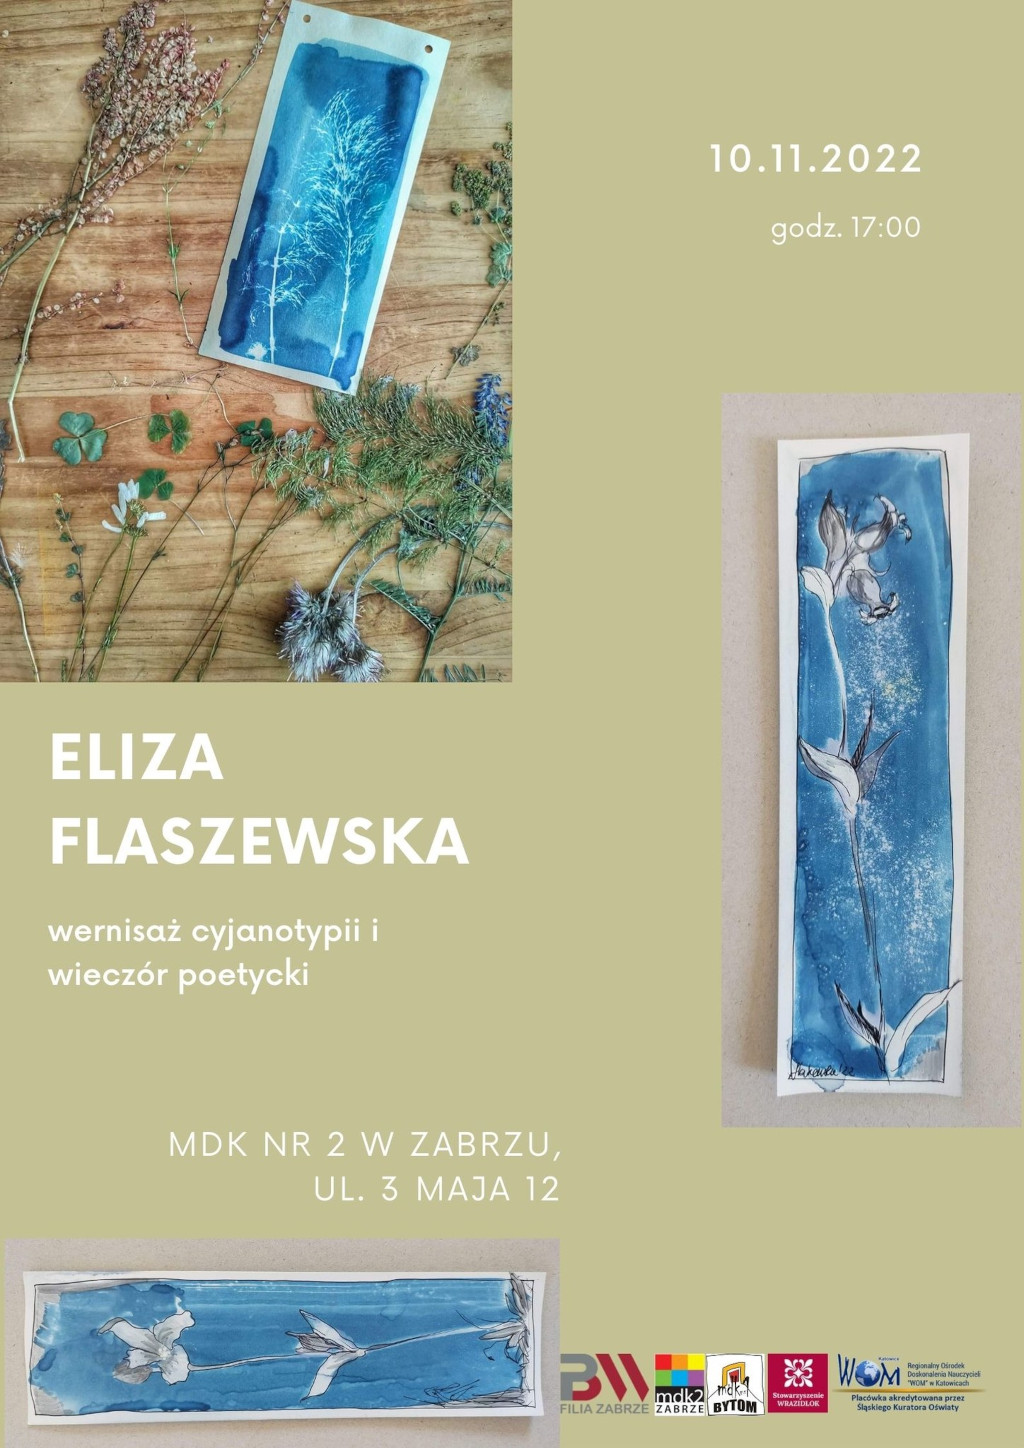 plakat promujący wernisaż i wieczór poetycki Elizy Flaszewskiej w Zabrzu